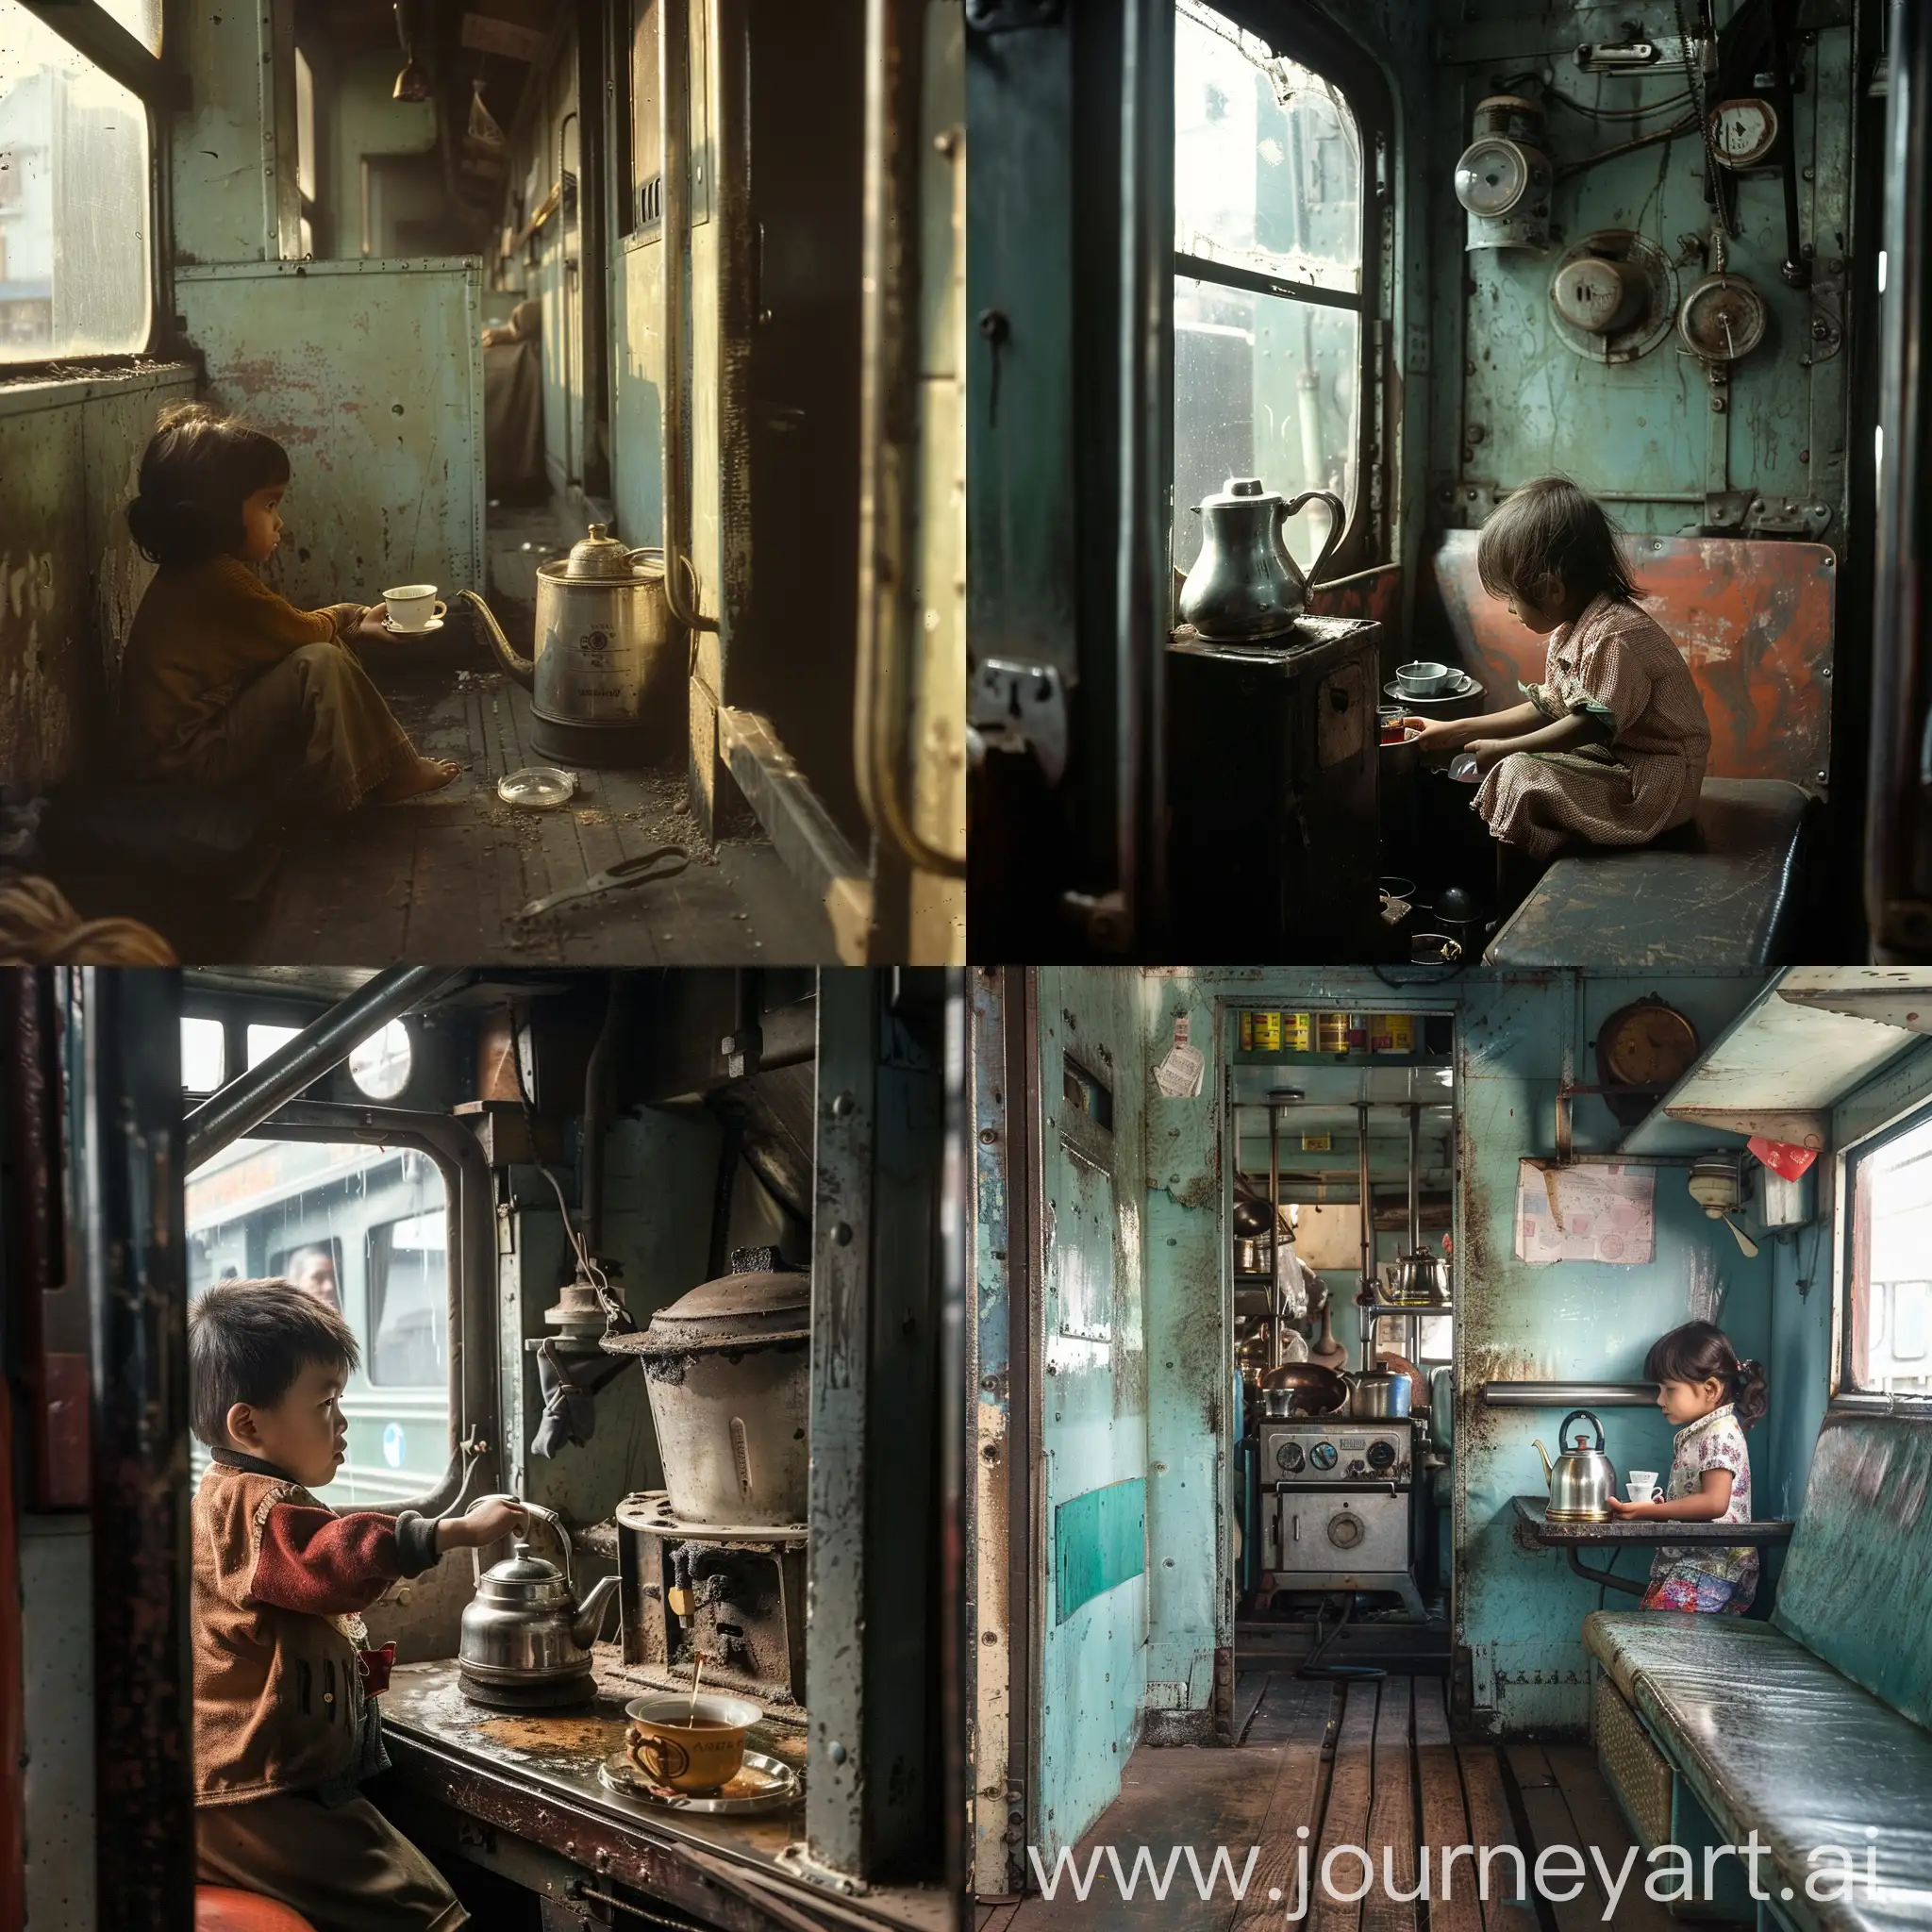 Adorable-Child-Selling-Tea-in-Vibrant-Train-Scene